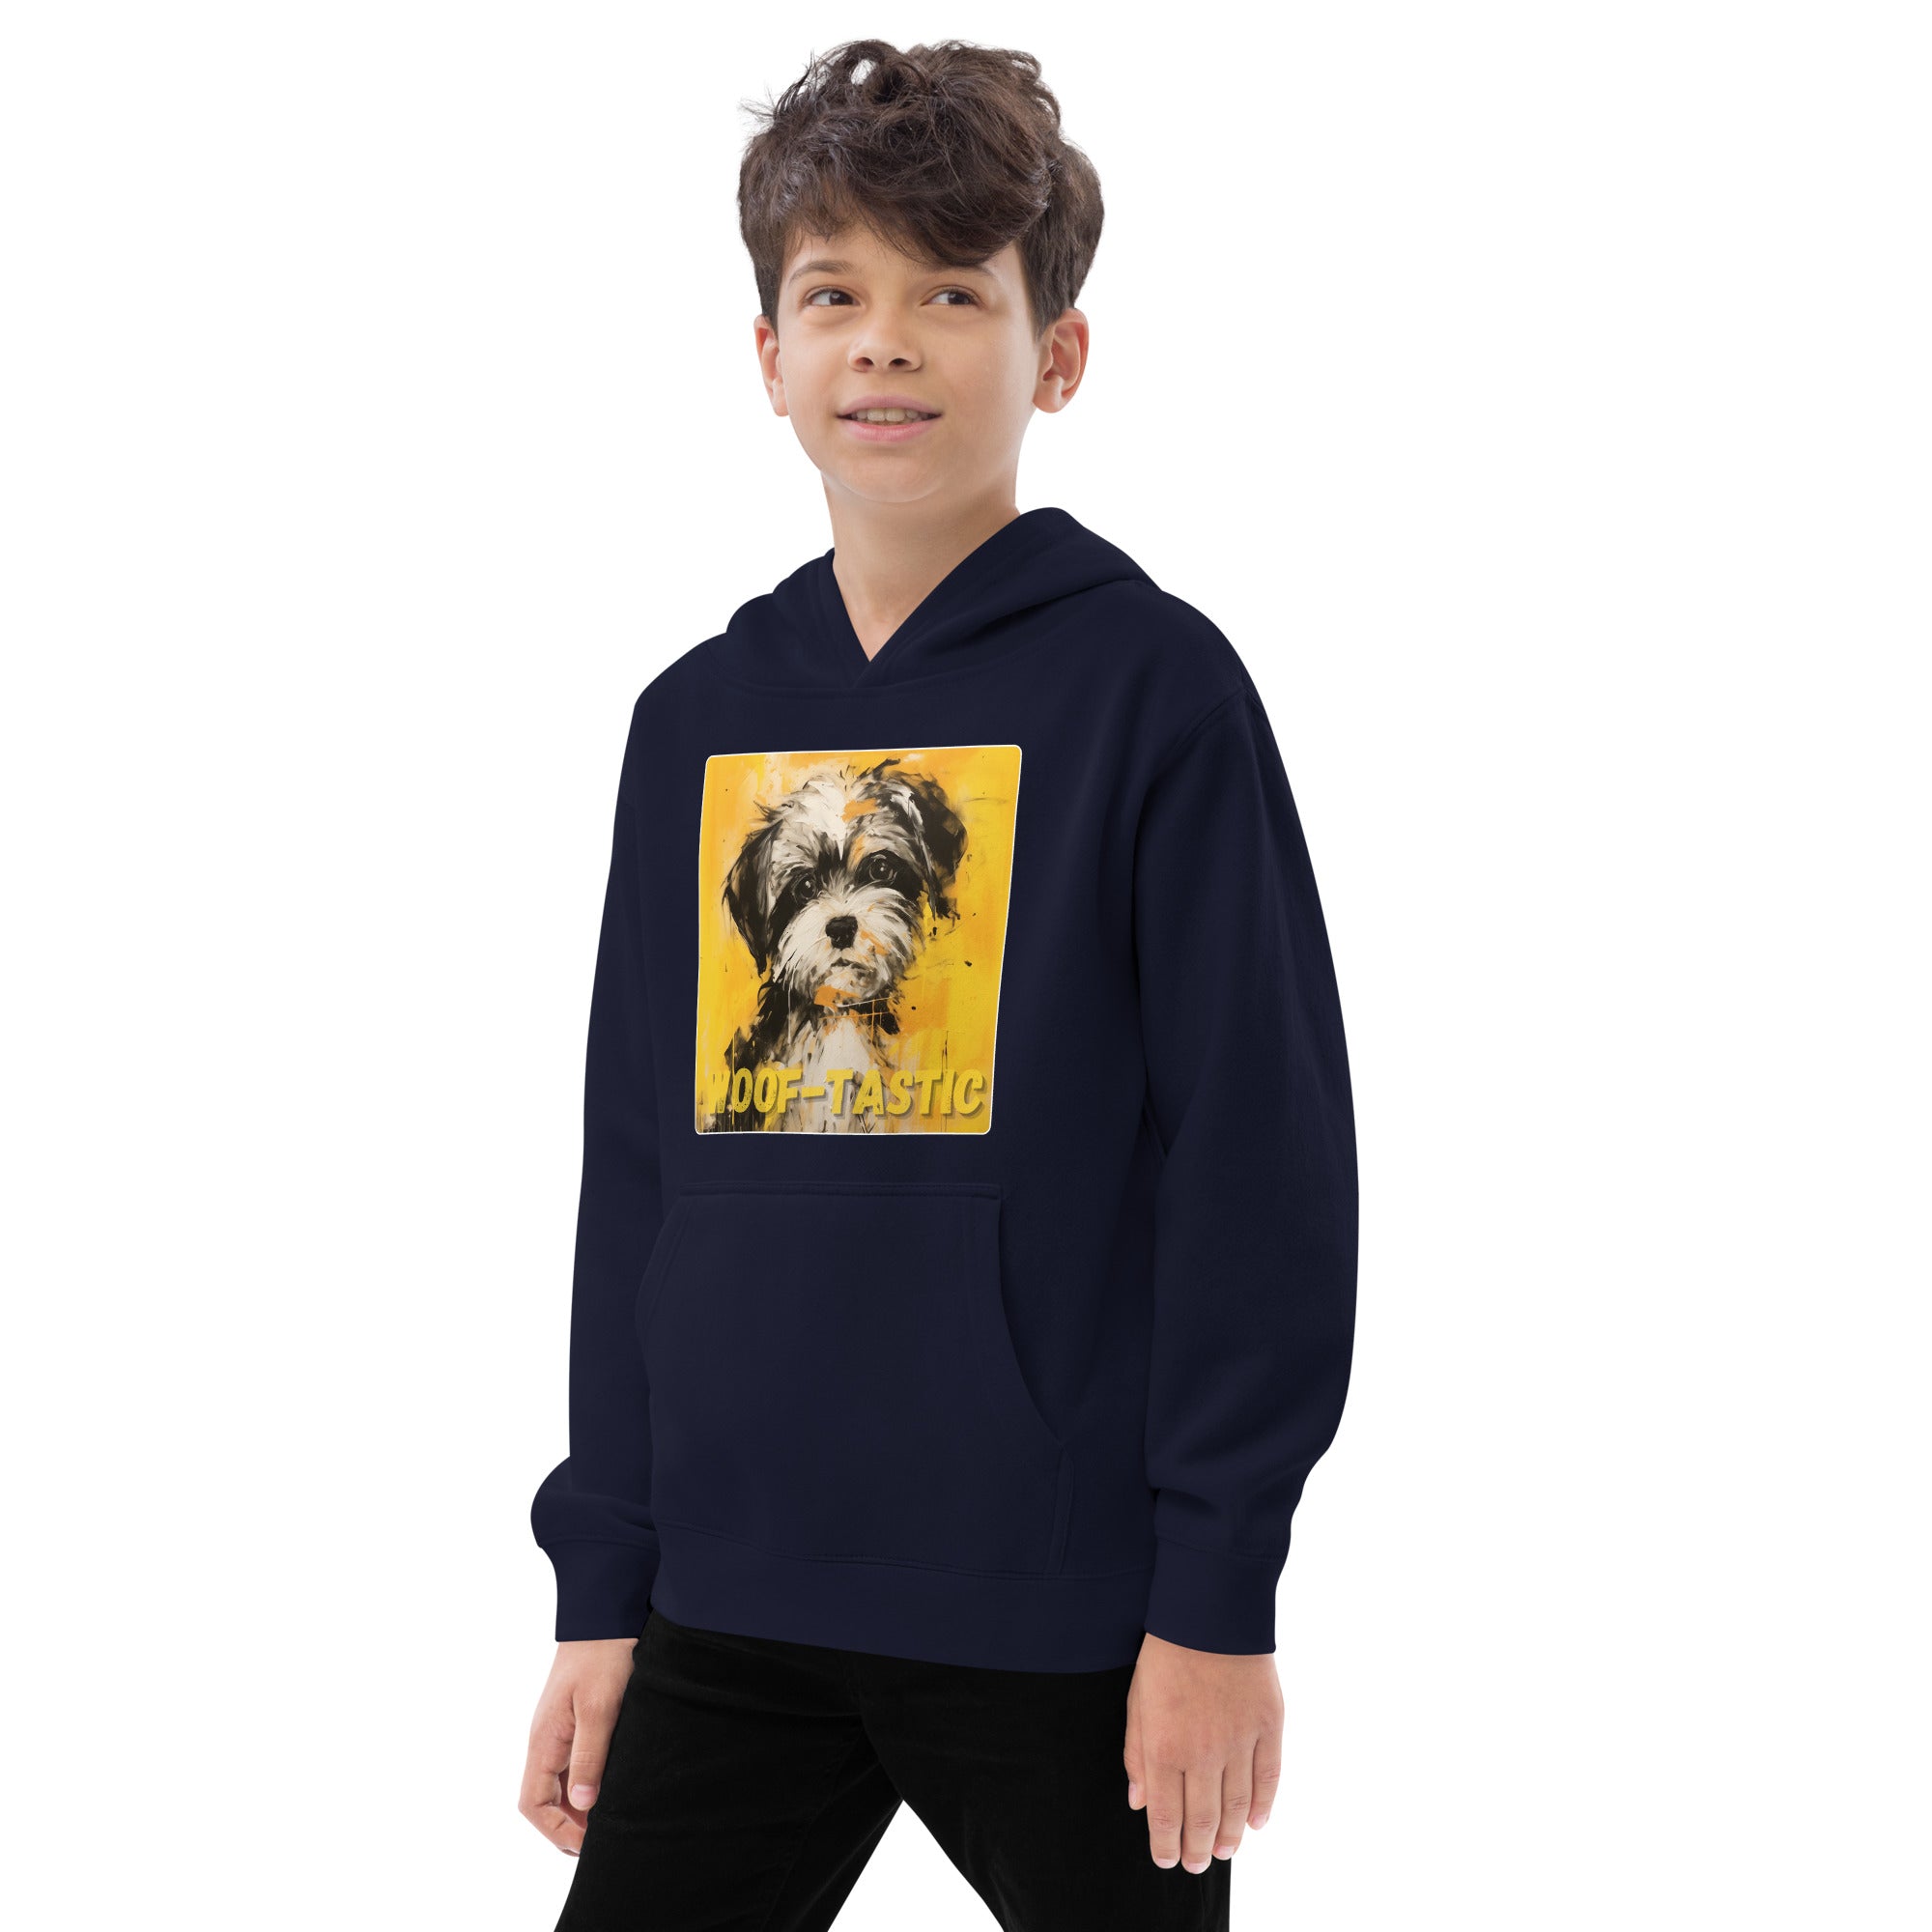 Kids fleece hoodie Woof-tastic Shih Tzu